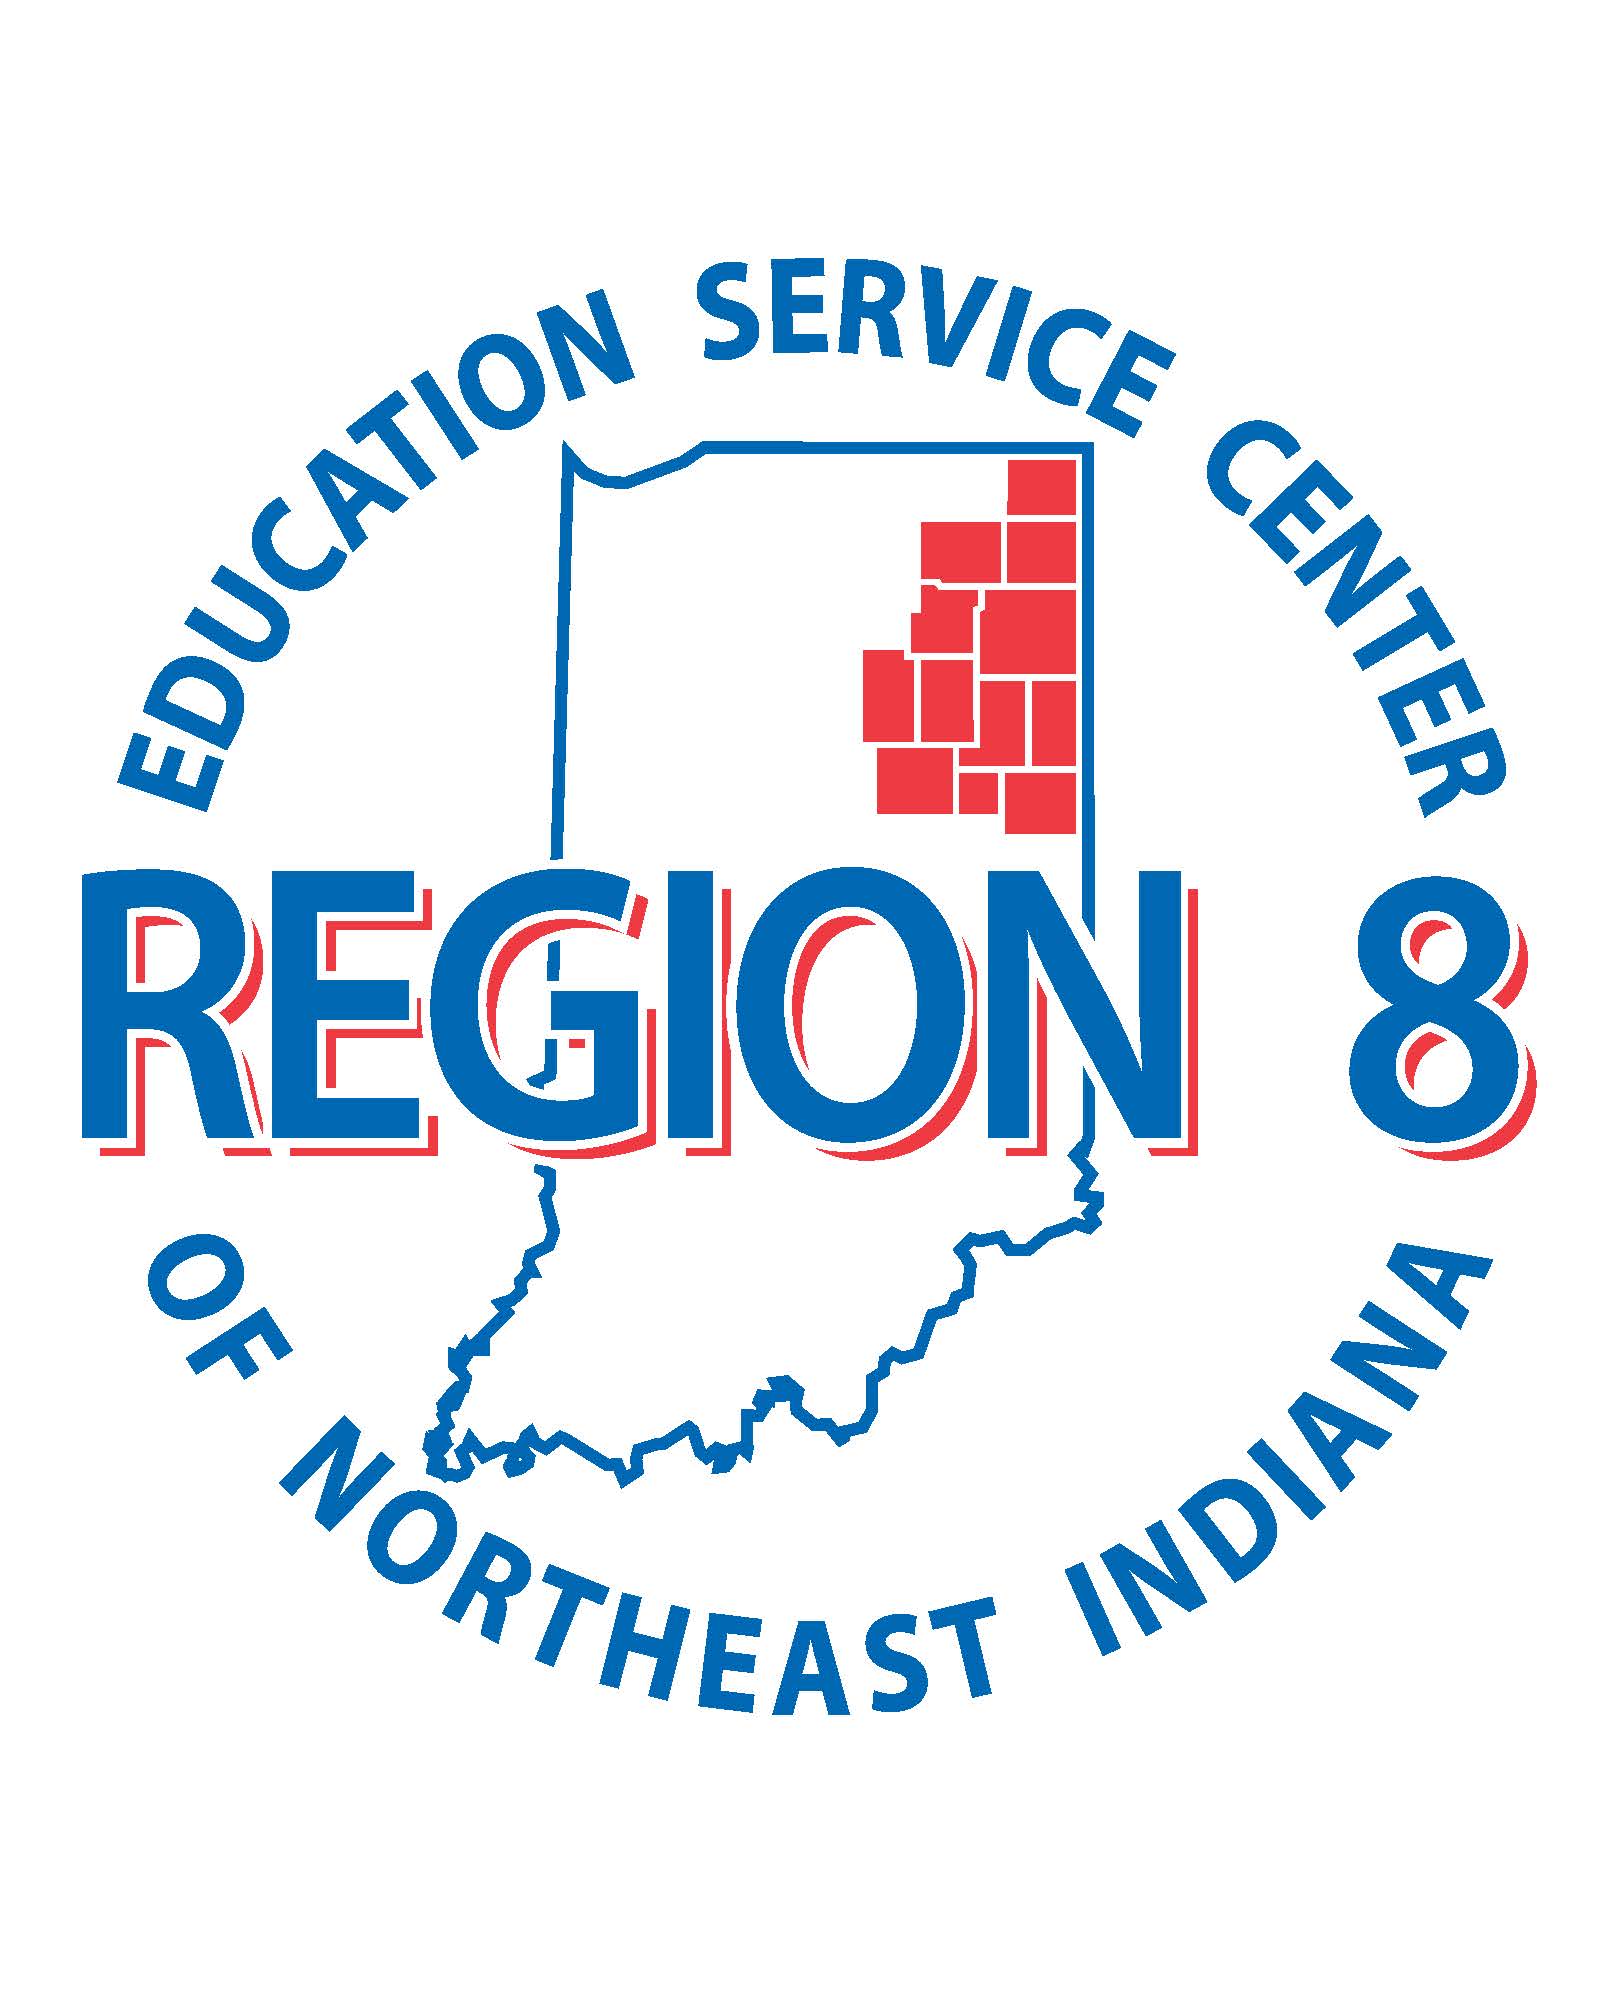 Region 8 Education Service Center